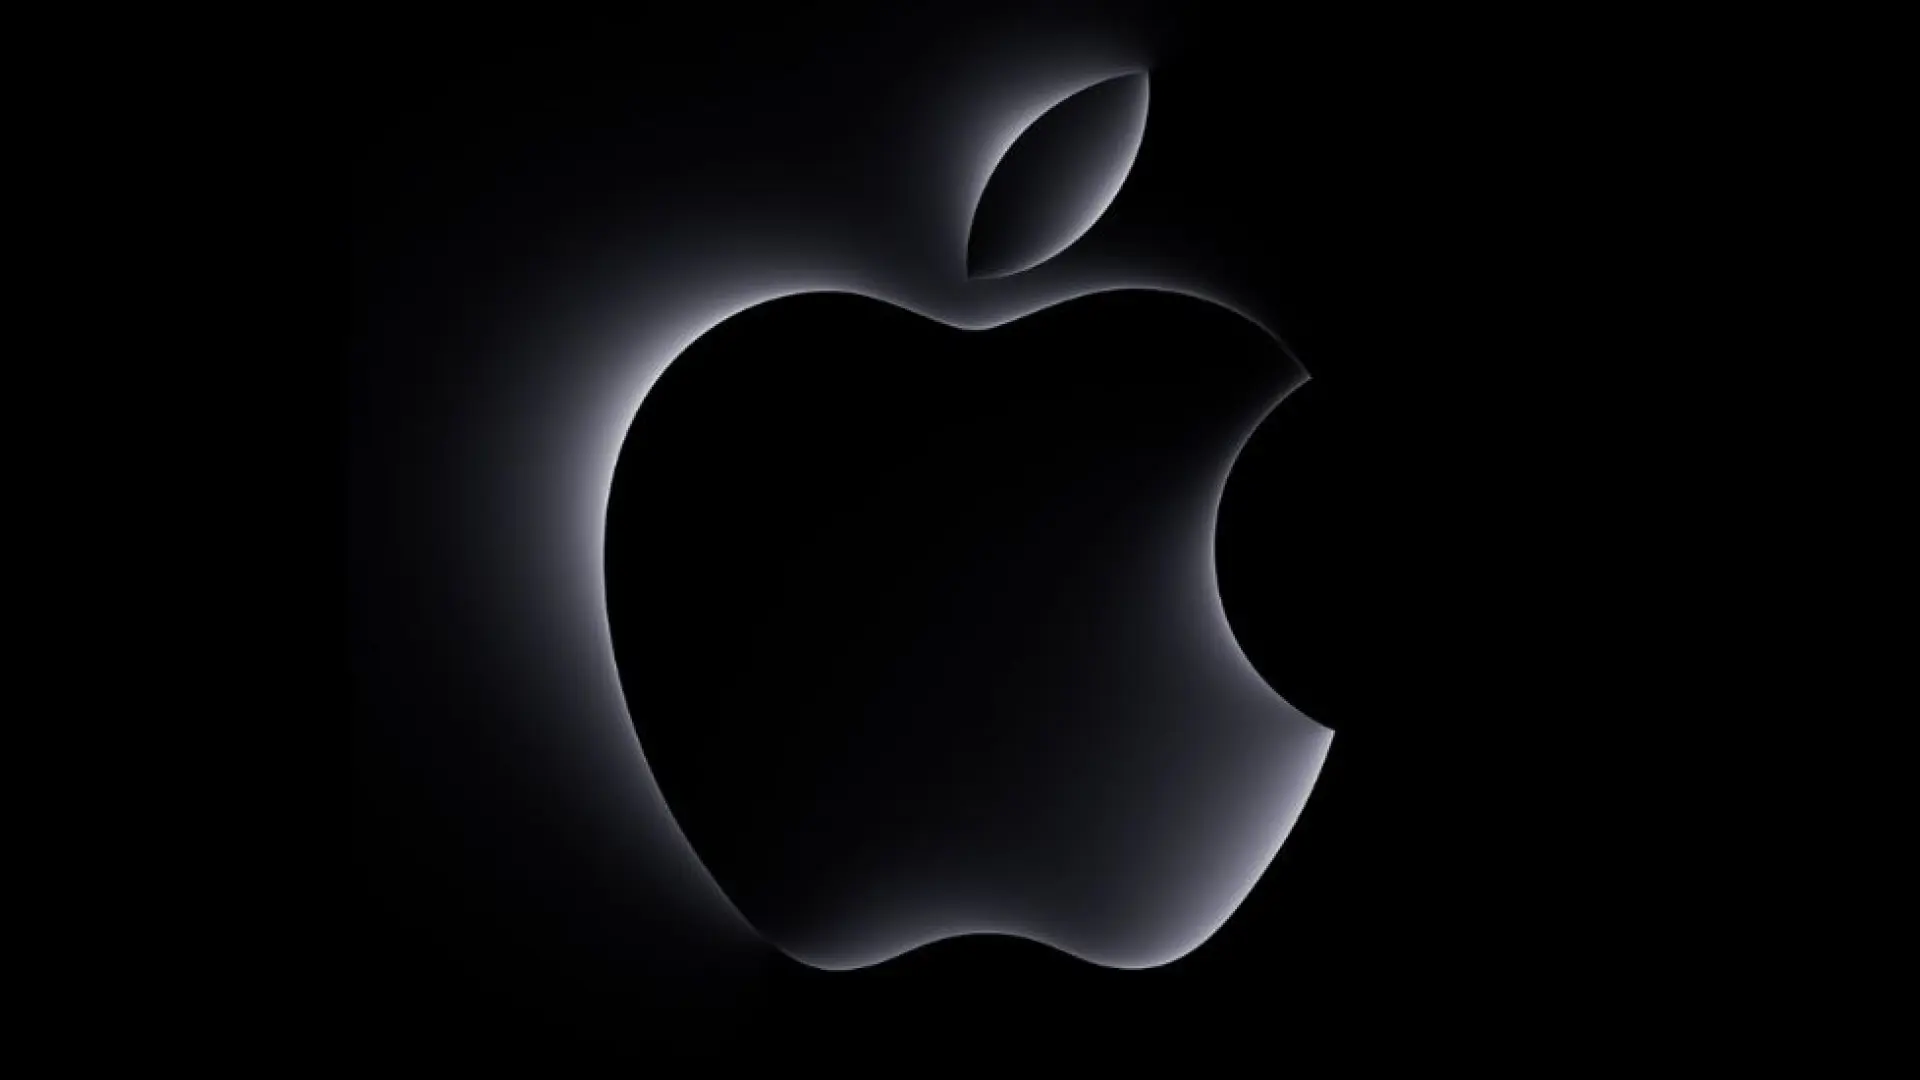 Cómo ver el evento de Apple M3 Mac «Scary Fast» – Nuevo iMac, MacBook Pro y más.